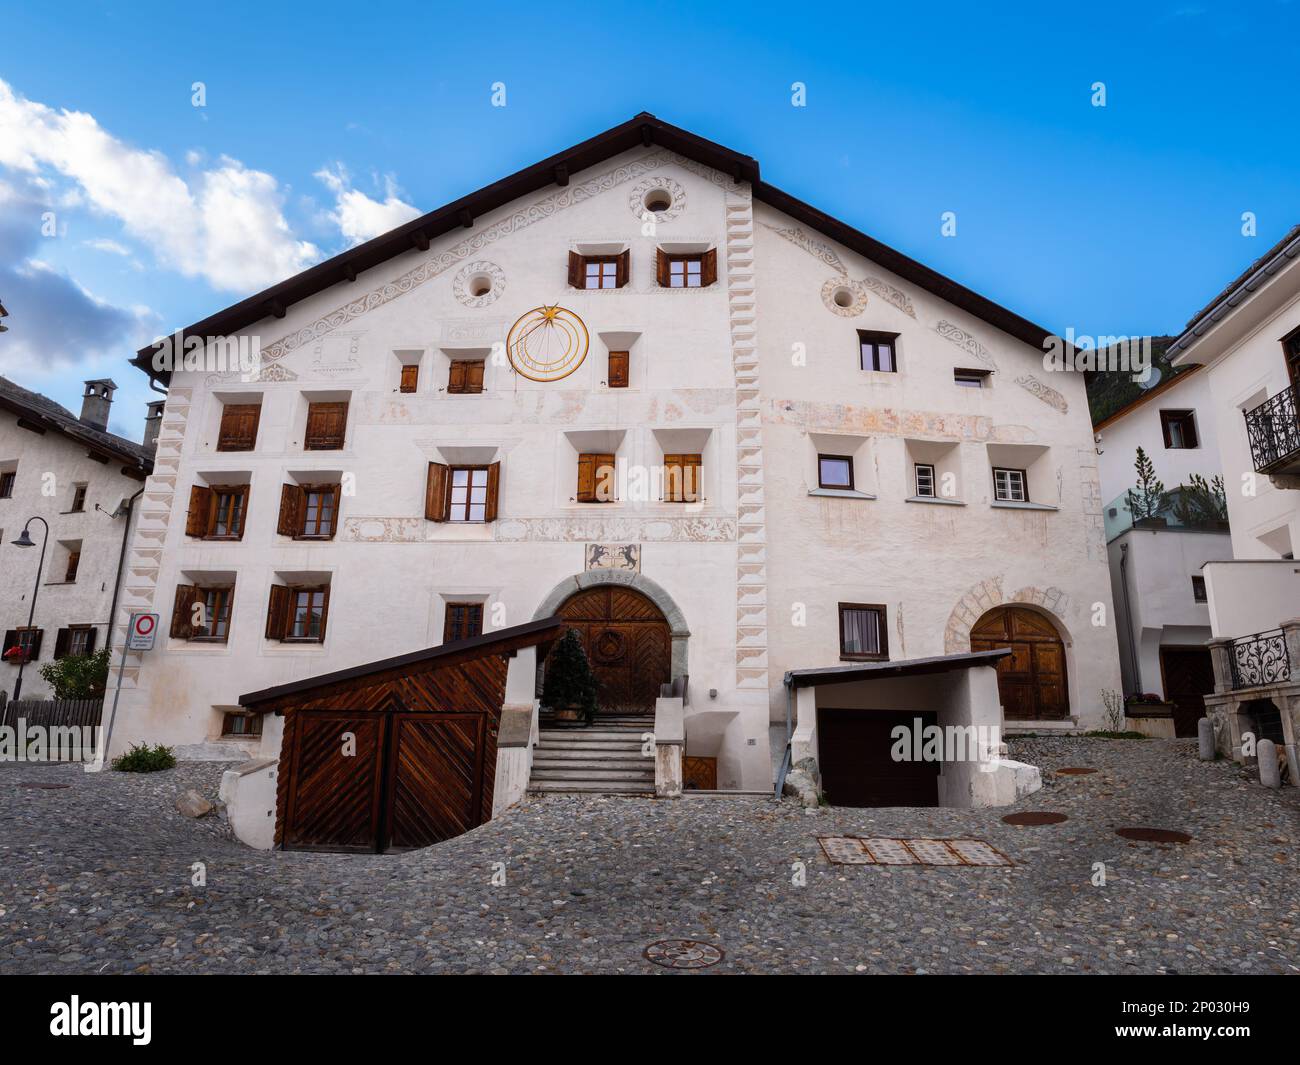 La Punt, Suisse - 29 septembre 2021 : grande maison suisse traditionnelle à la Punt en Engadine, canton de Graubunden en Suisse. Banque D'Images